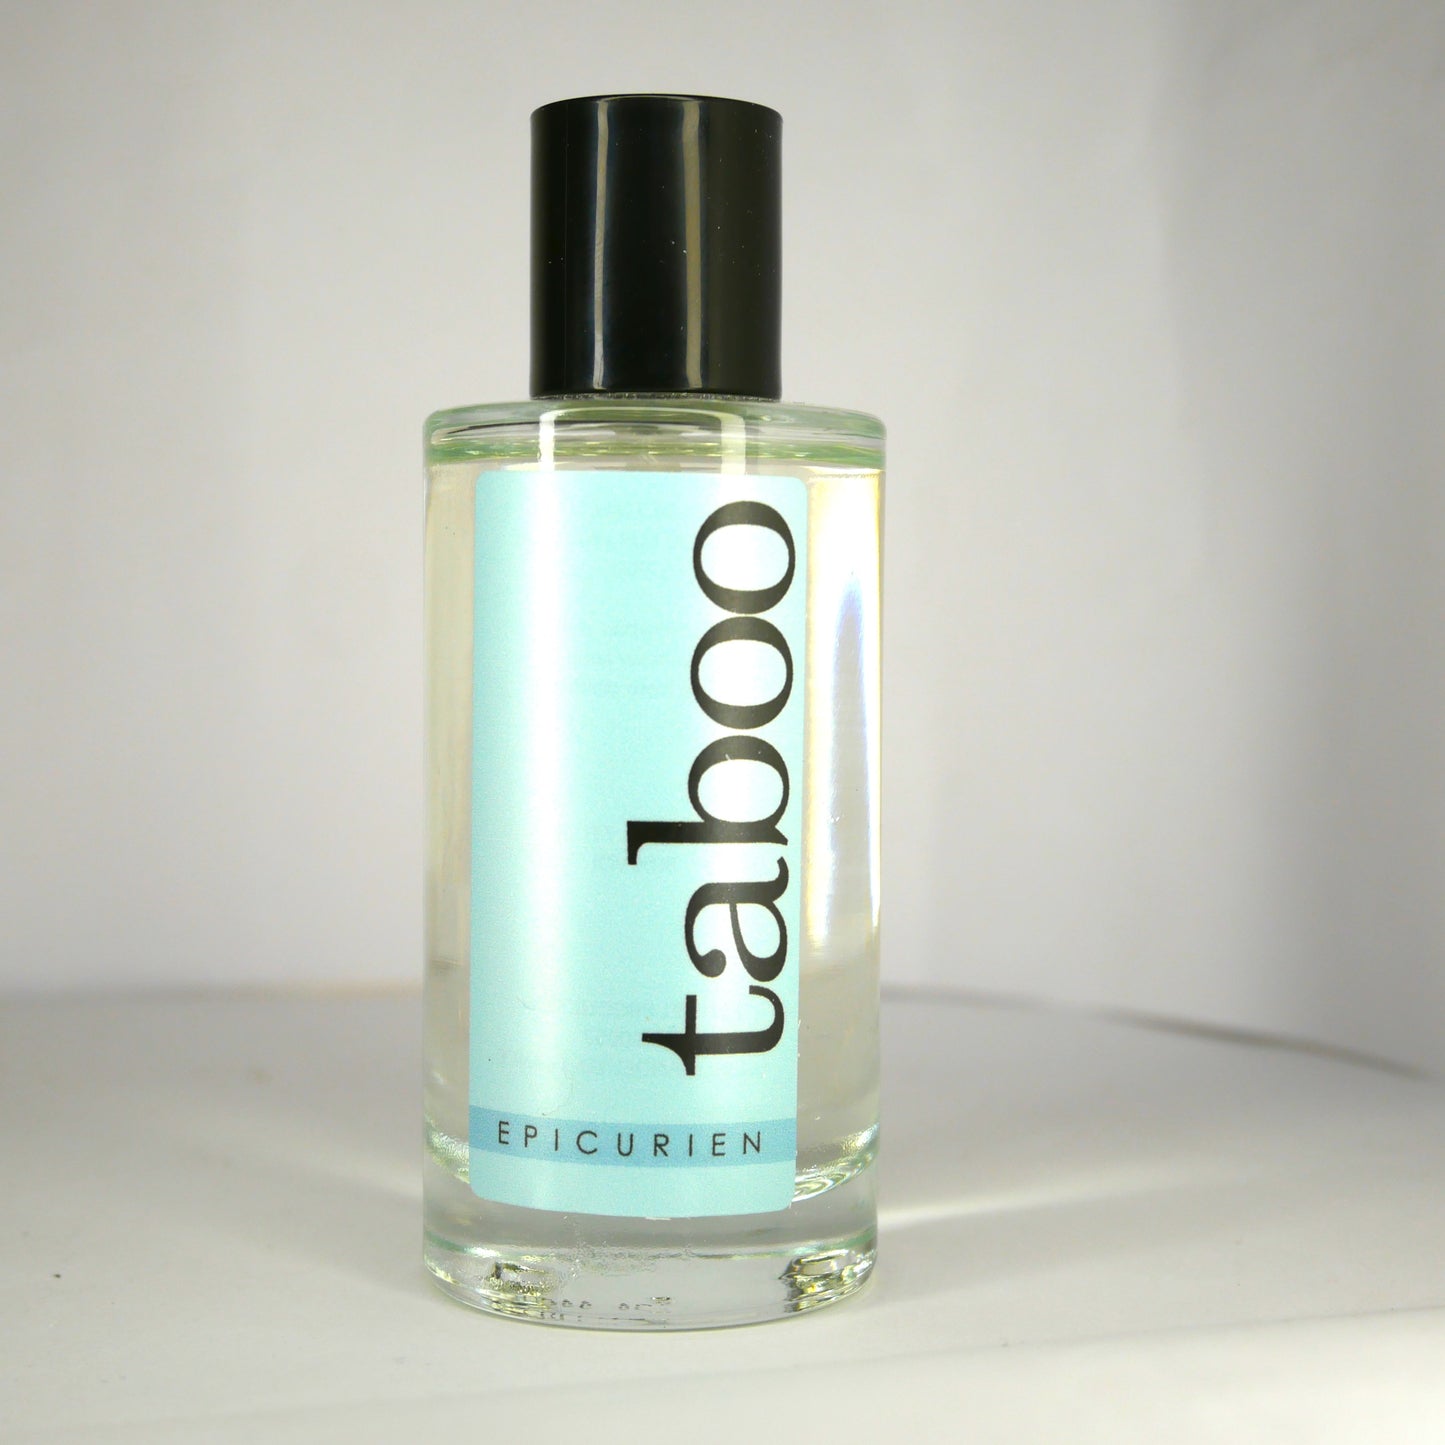 Taboo Epicurien Parfüm mit Pheromonen, natürliches Spray für Männer, lockt Frauen an, 50 ml 